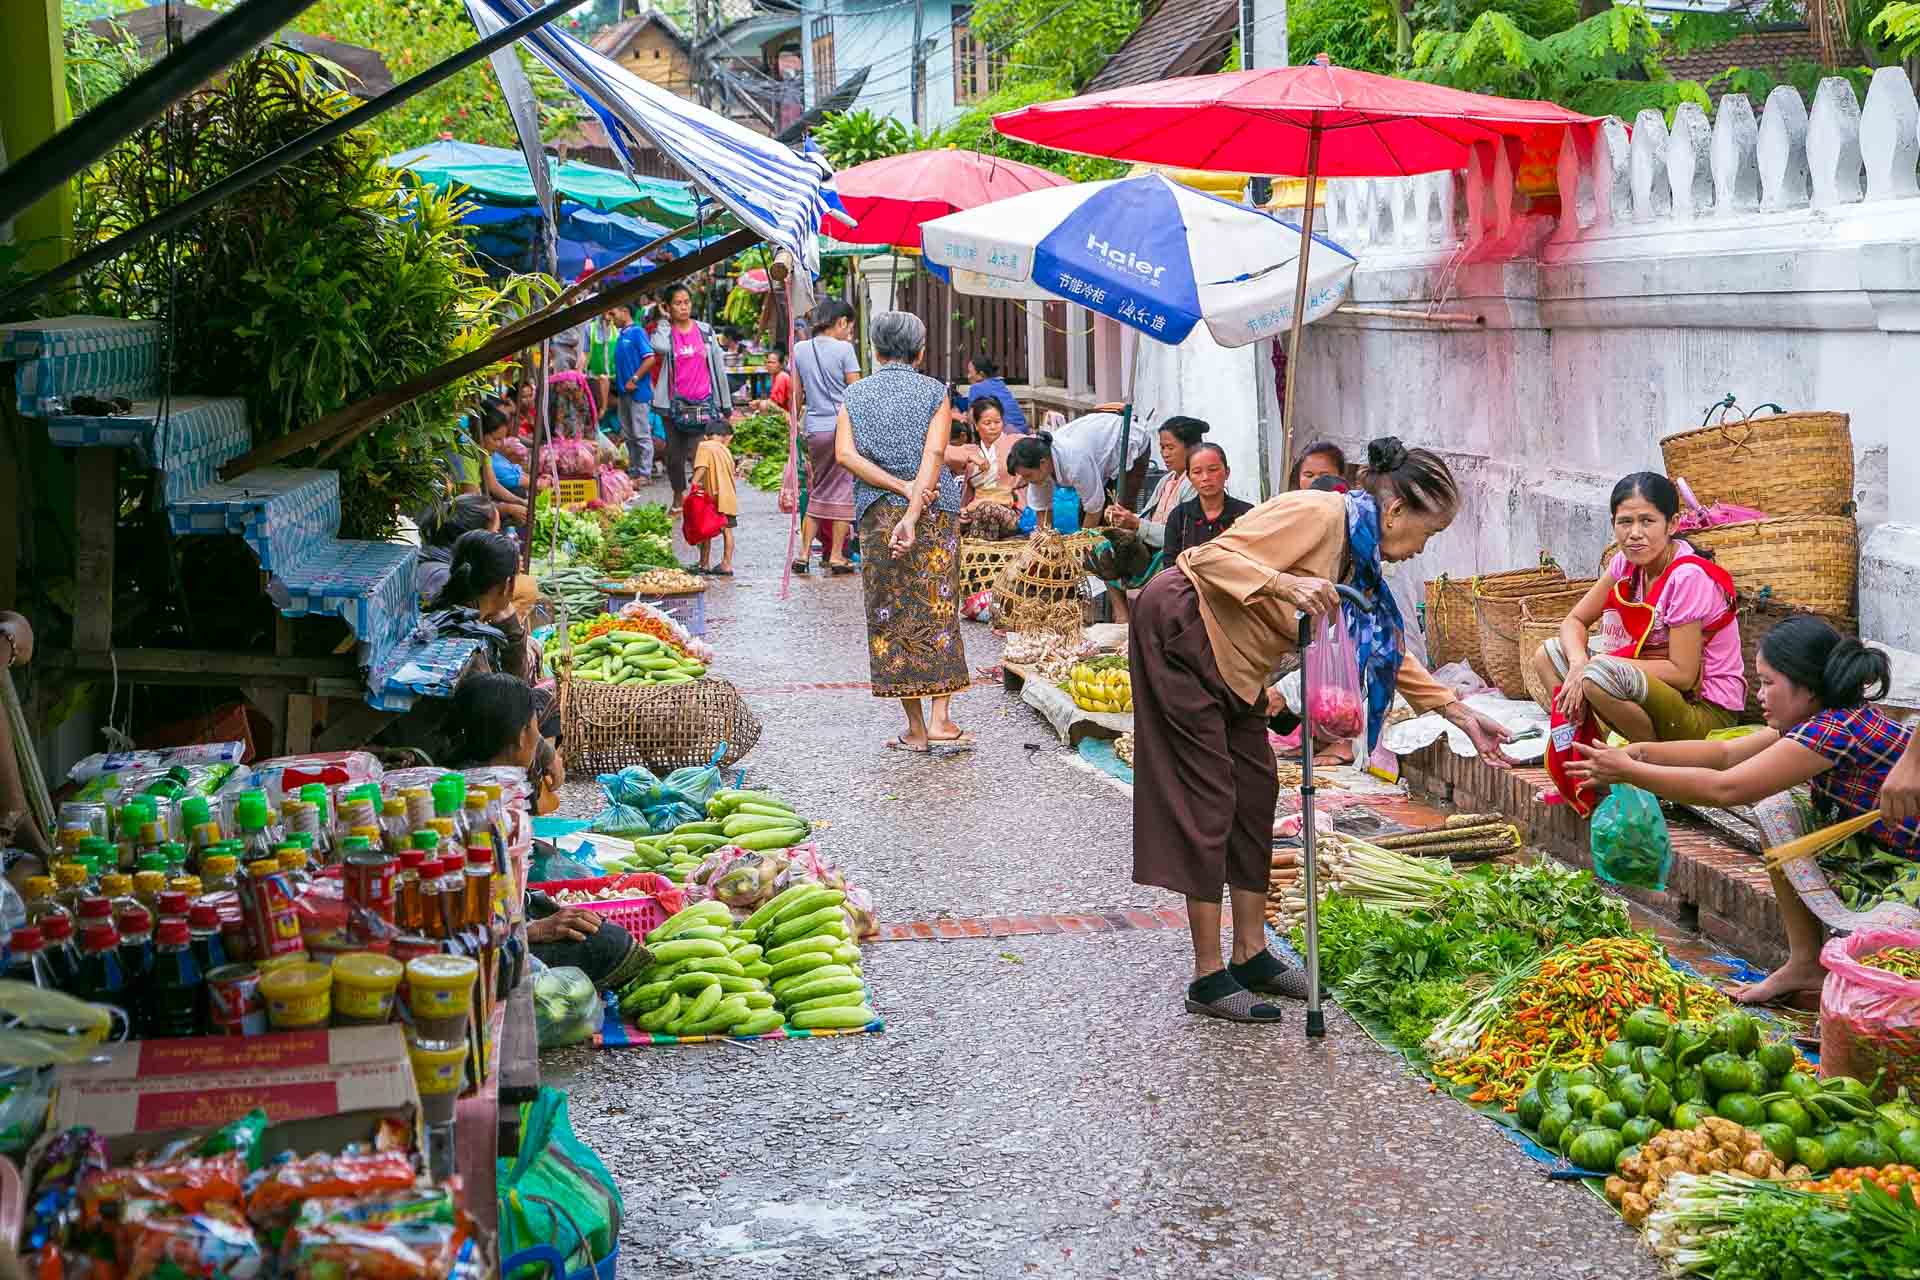 /fm/Files//Pictures/Ido Uploads(1)/Asia/Laos/Luang Prabang/Luang Prabang - Day Market - SS.jpg